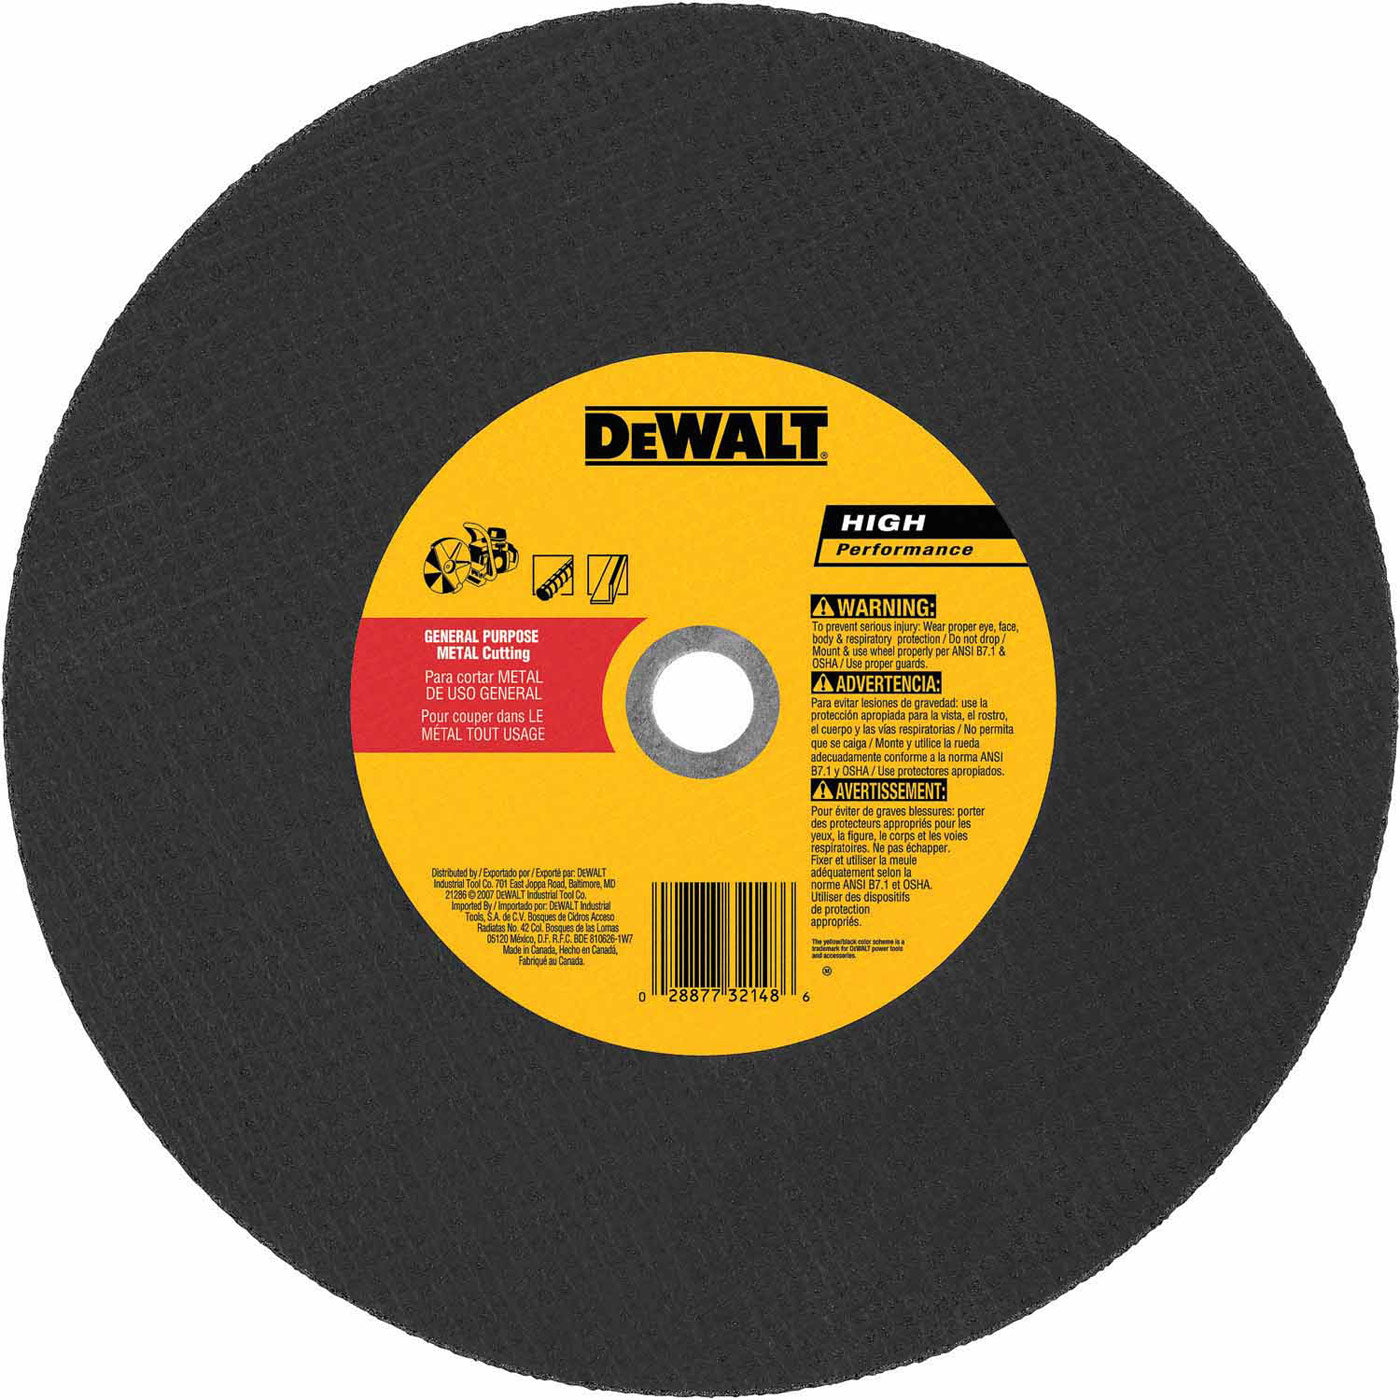 DeWalt DW8021 14" x 5/32" x 20mm Metal Cutting High Speed Cut-Off Wheel